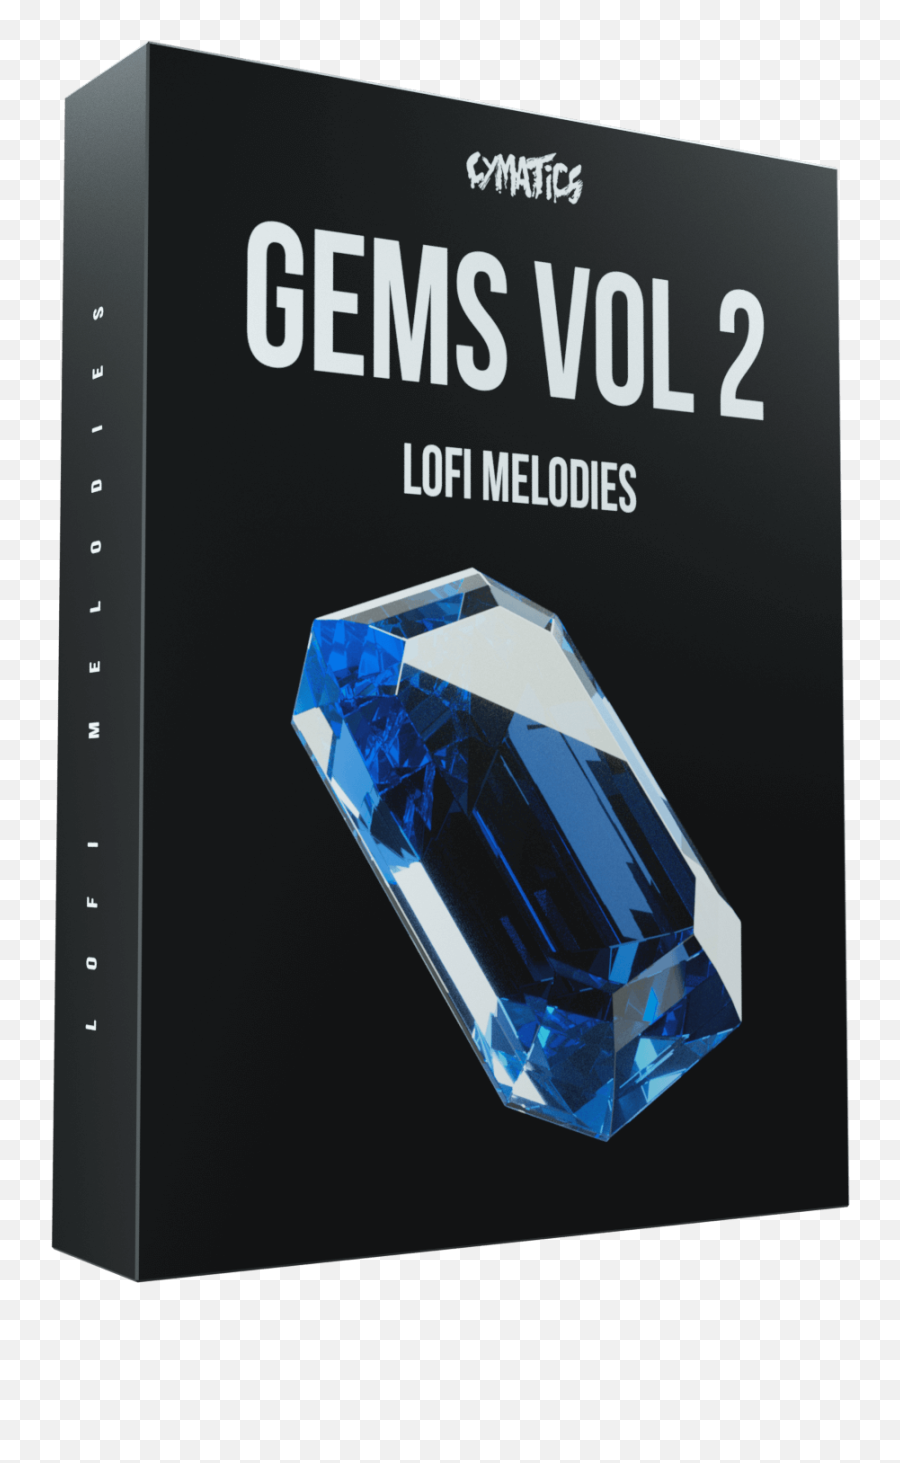 Gems Vol - Cymatics Gems Melody Bundle Emoji,Emotion Lofi Music